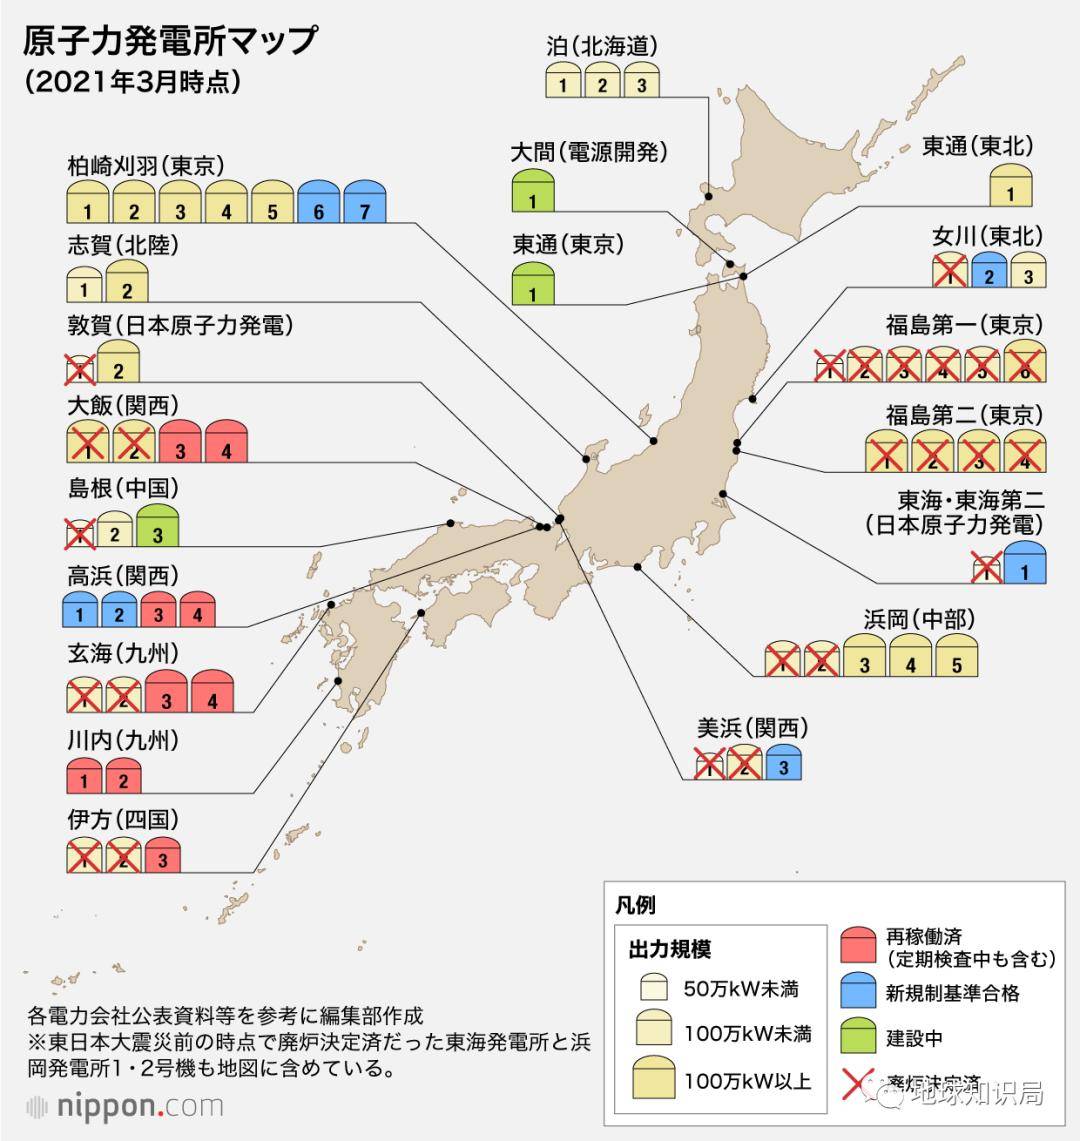 还没完日本还要造更多更多核电站